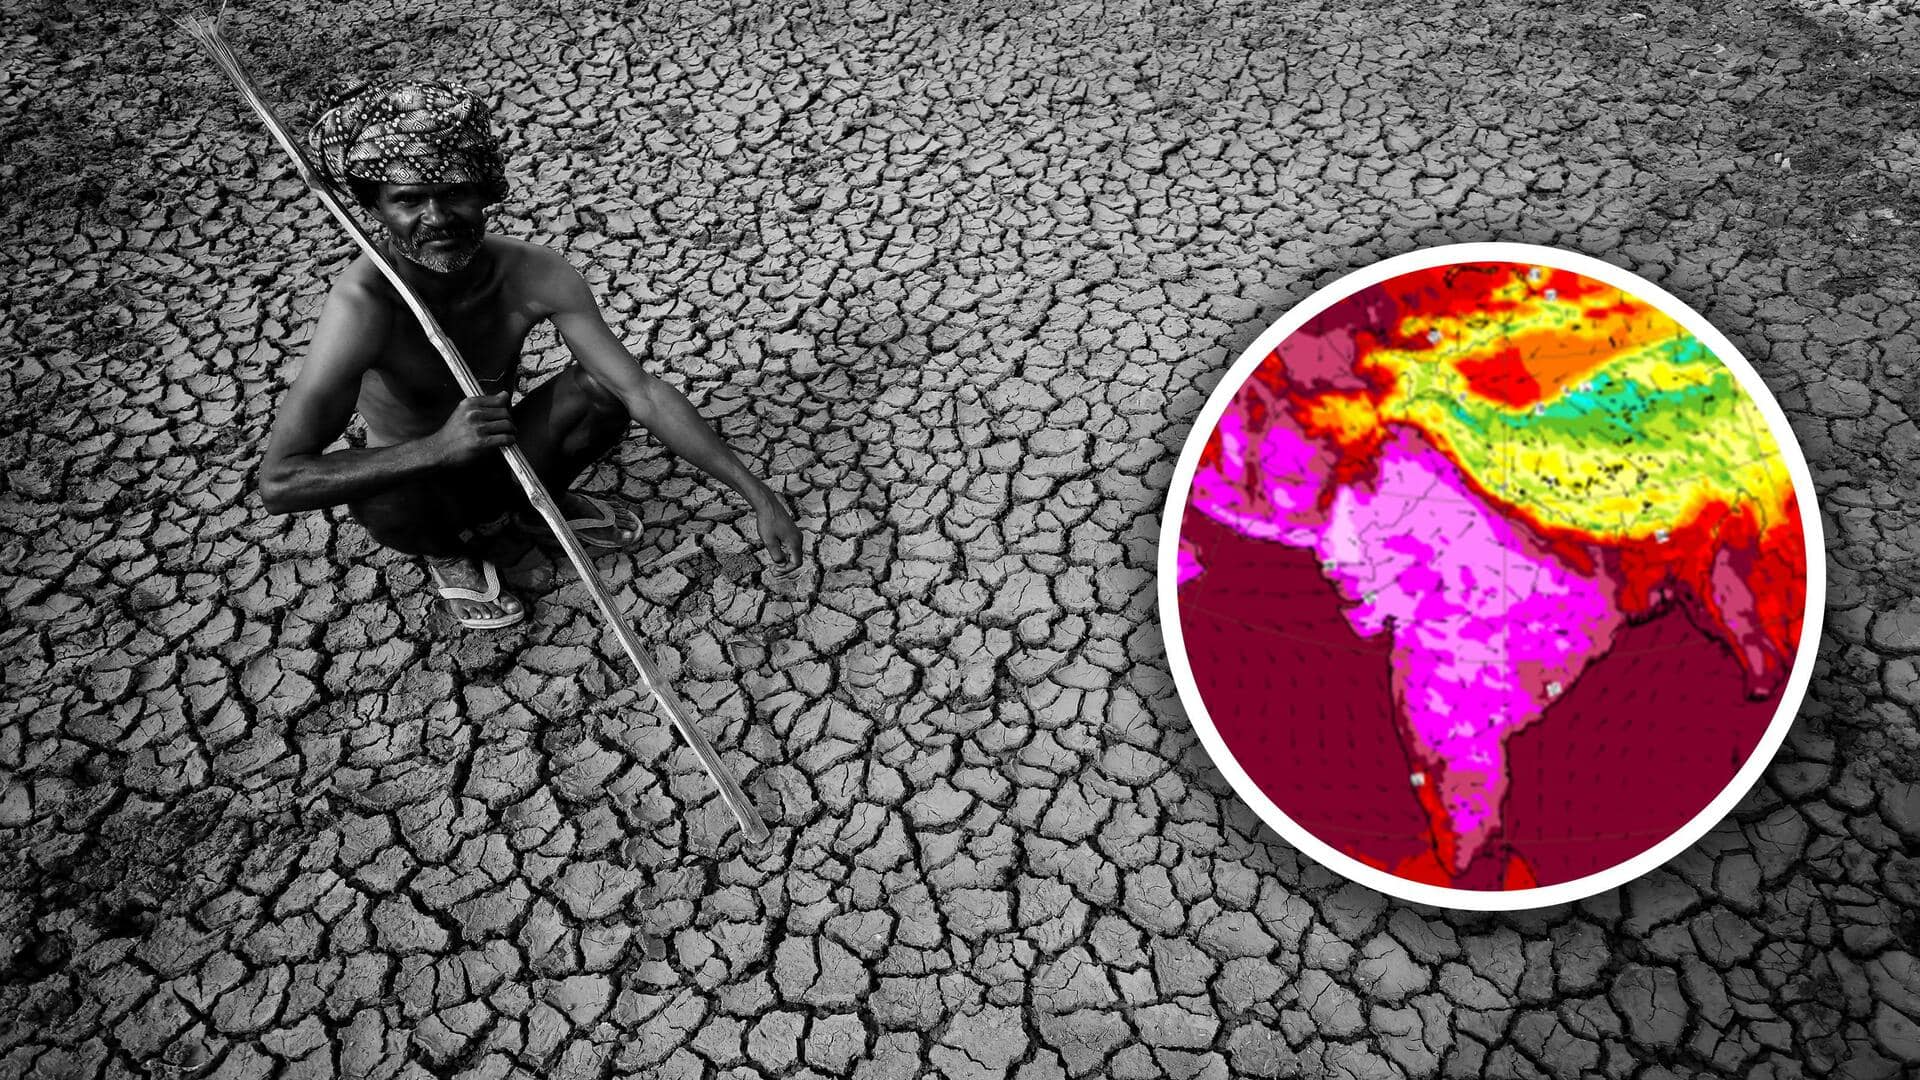 भारत में फरवरी में गर्मी ने तोड़ा 122 सालों का रिकॉर्ड, मौसम वैज्ञानिकों ने जताई चिंता 